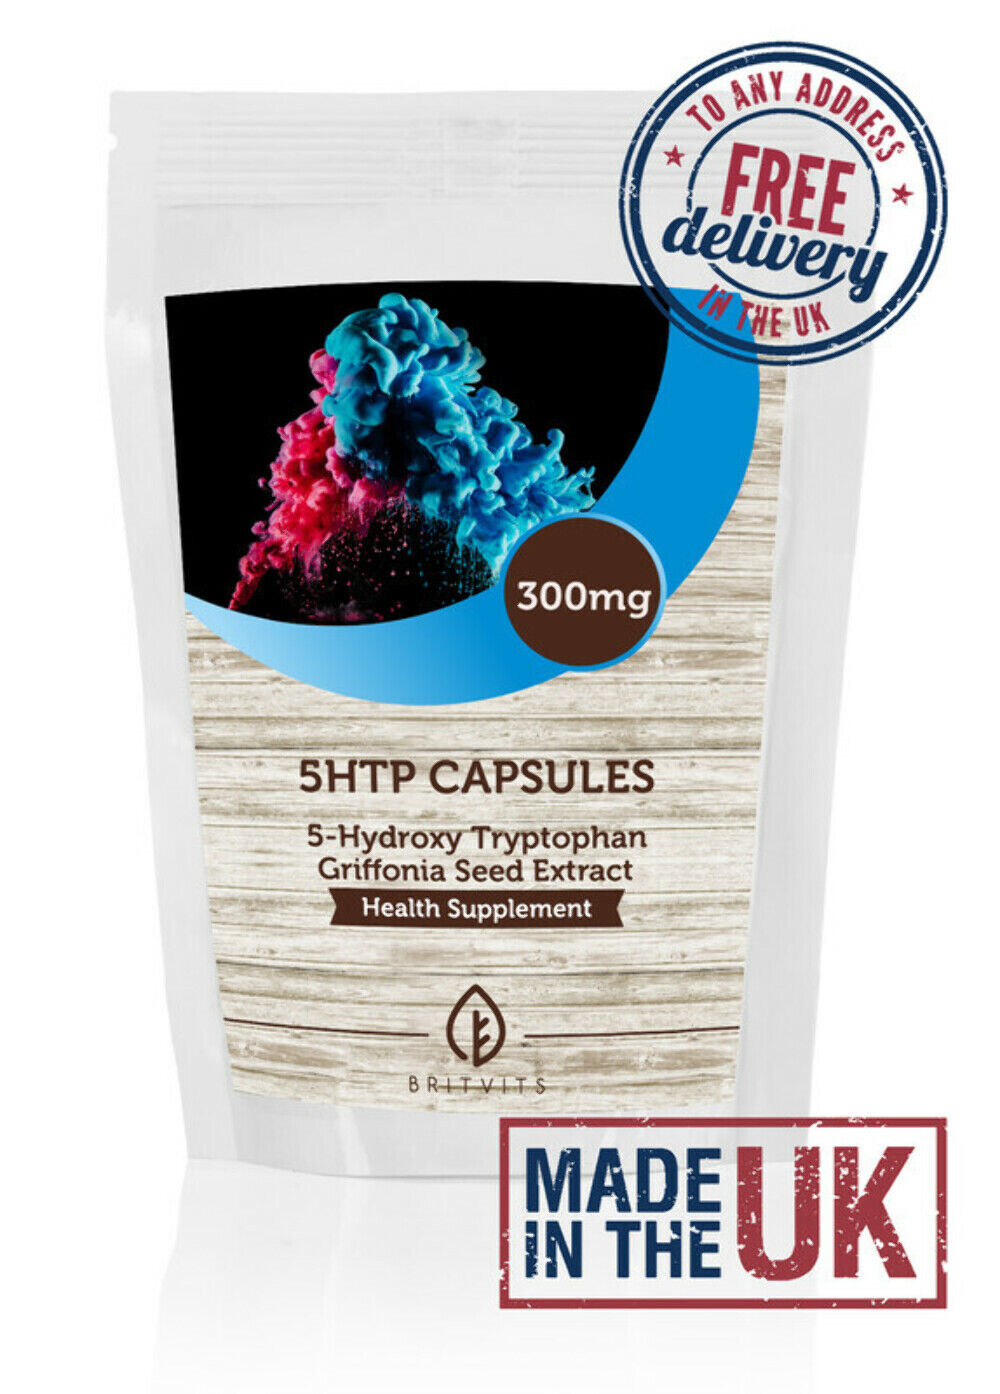 Griffonia Seed Extract 10% 5-HTP 300mg Capsules- Pack of 1000 Pills BULK Wholesa Zapewnienie jakości, wybuchowe zakupy